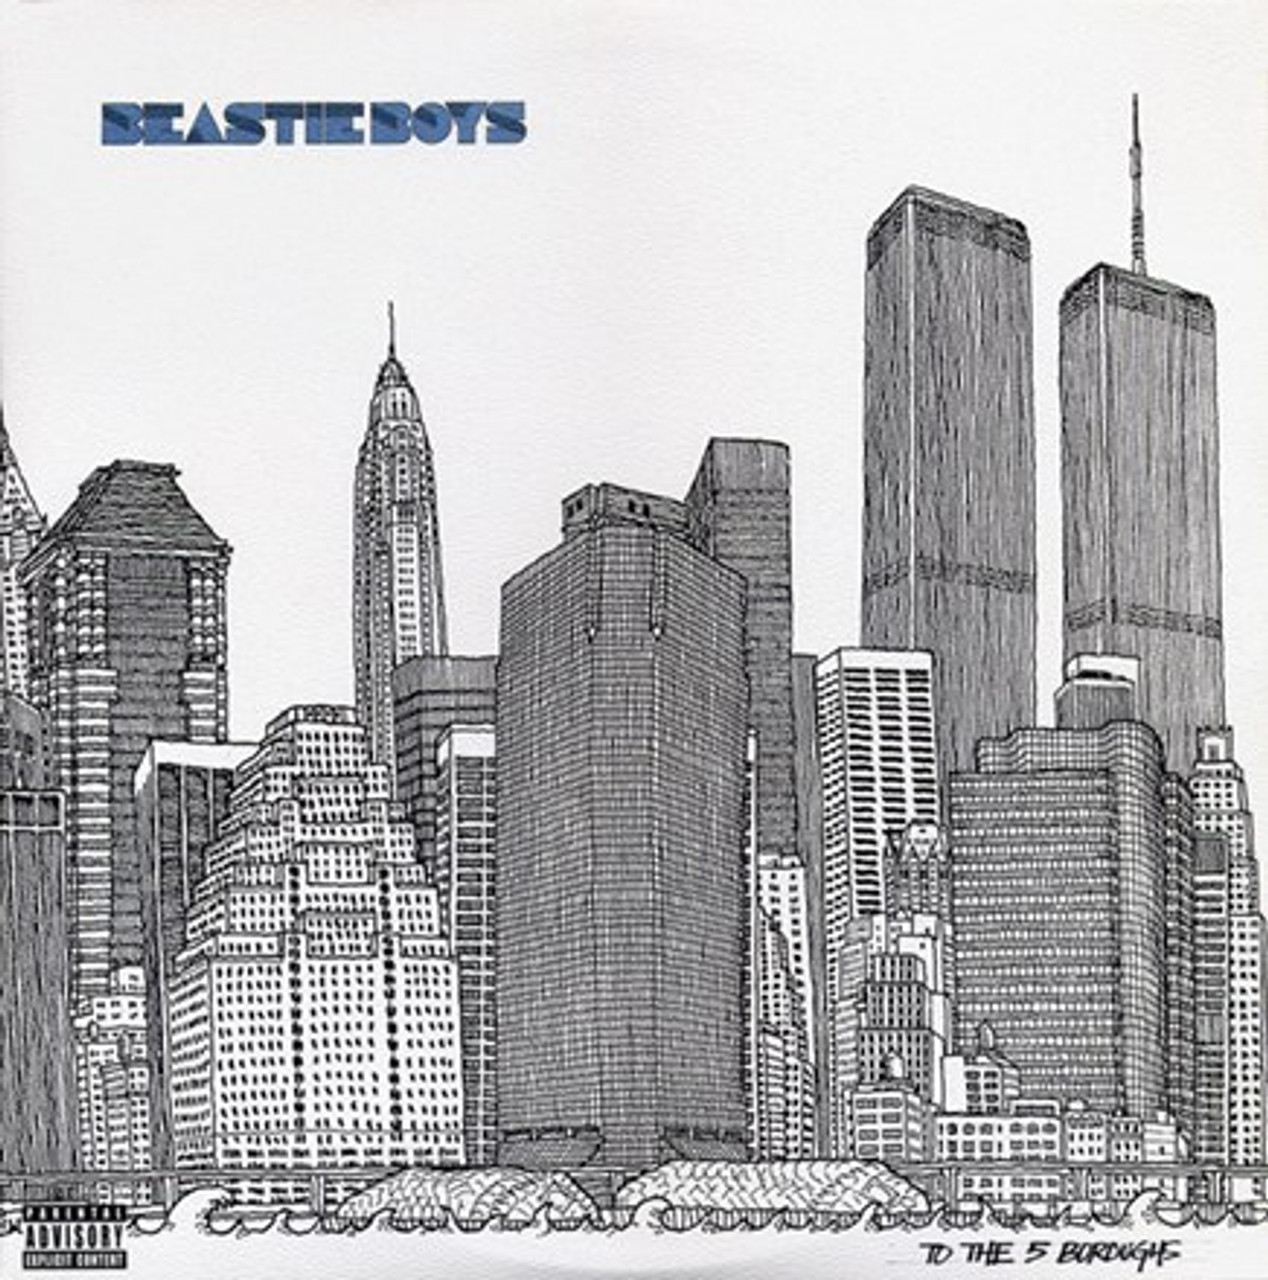 Beastie Boys - To the 5 Boroughs (Vinyl 2LP)